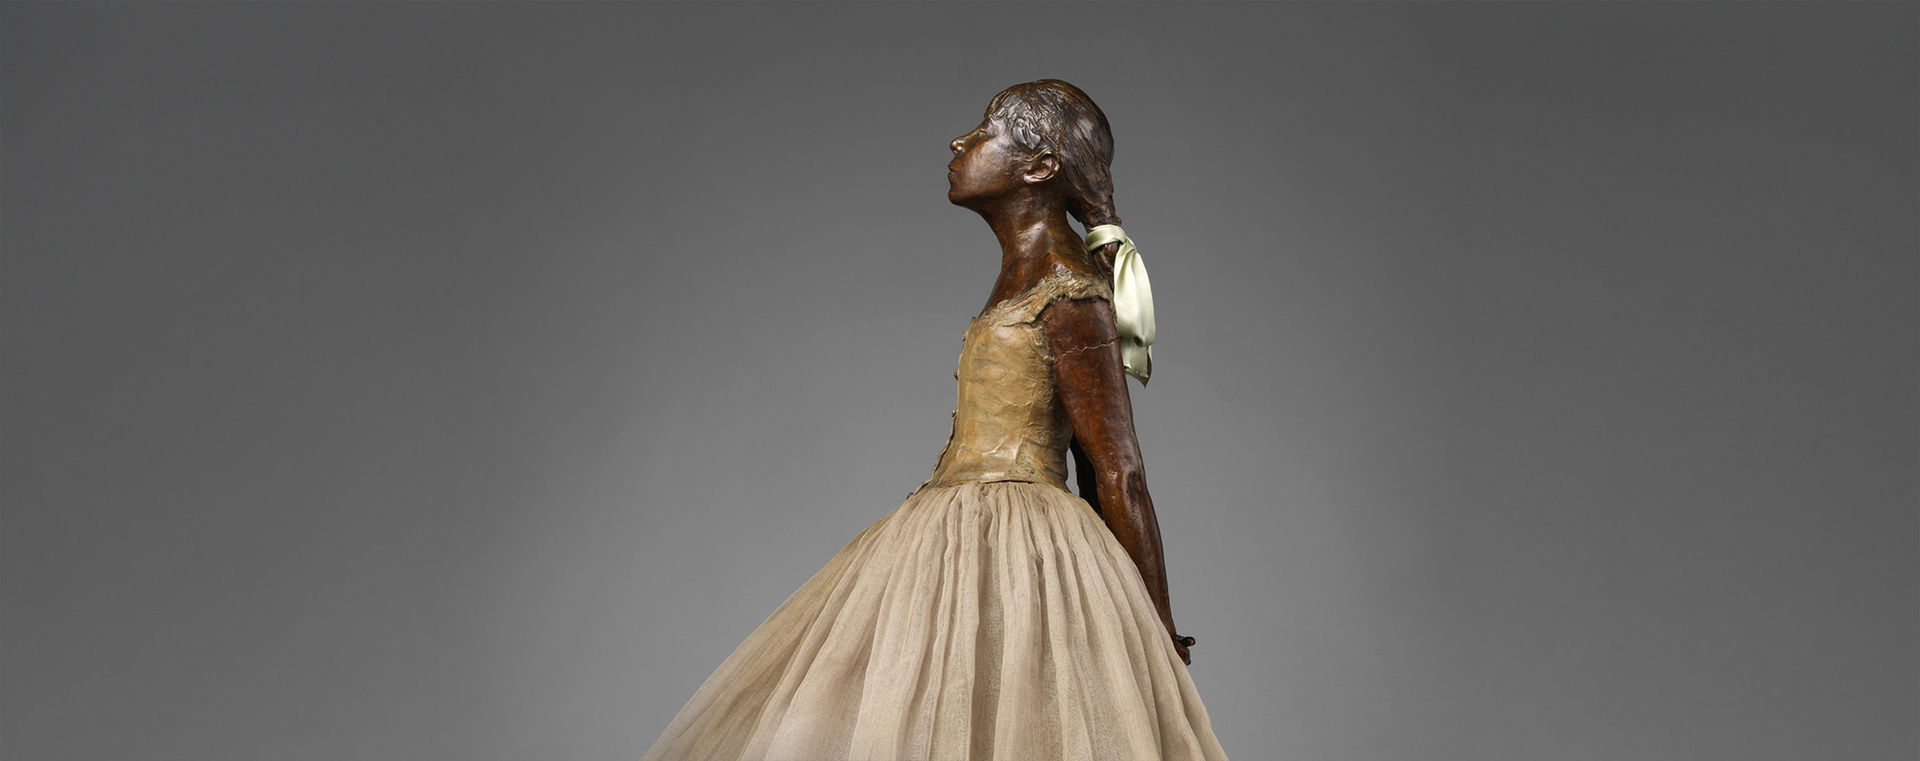 The Evolution of Degas’s Little Dancer | The Metropolitan Museum of Art